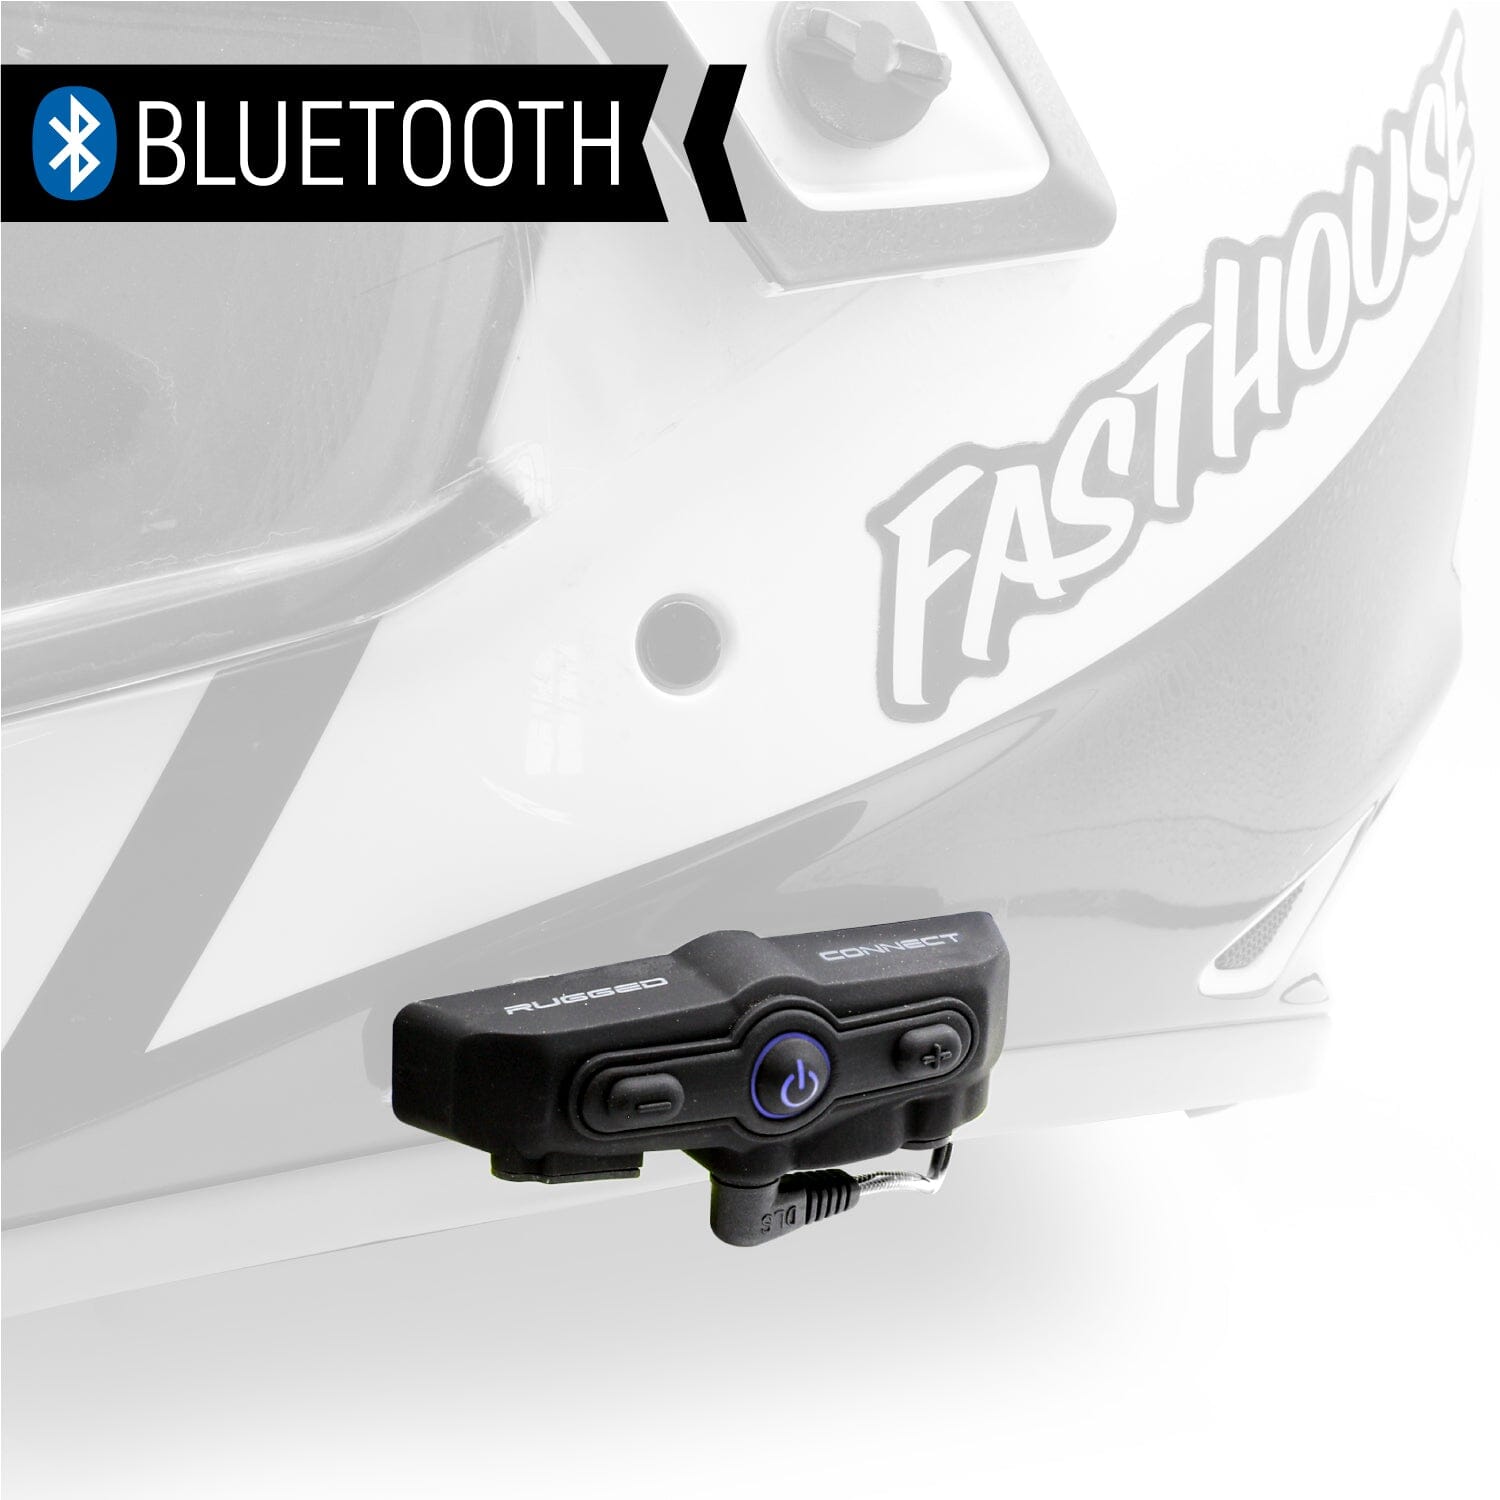 Motorcycle Helmet Bluetooth, Motorcycle Helmet Intercom